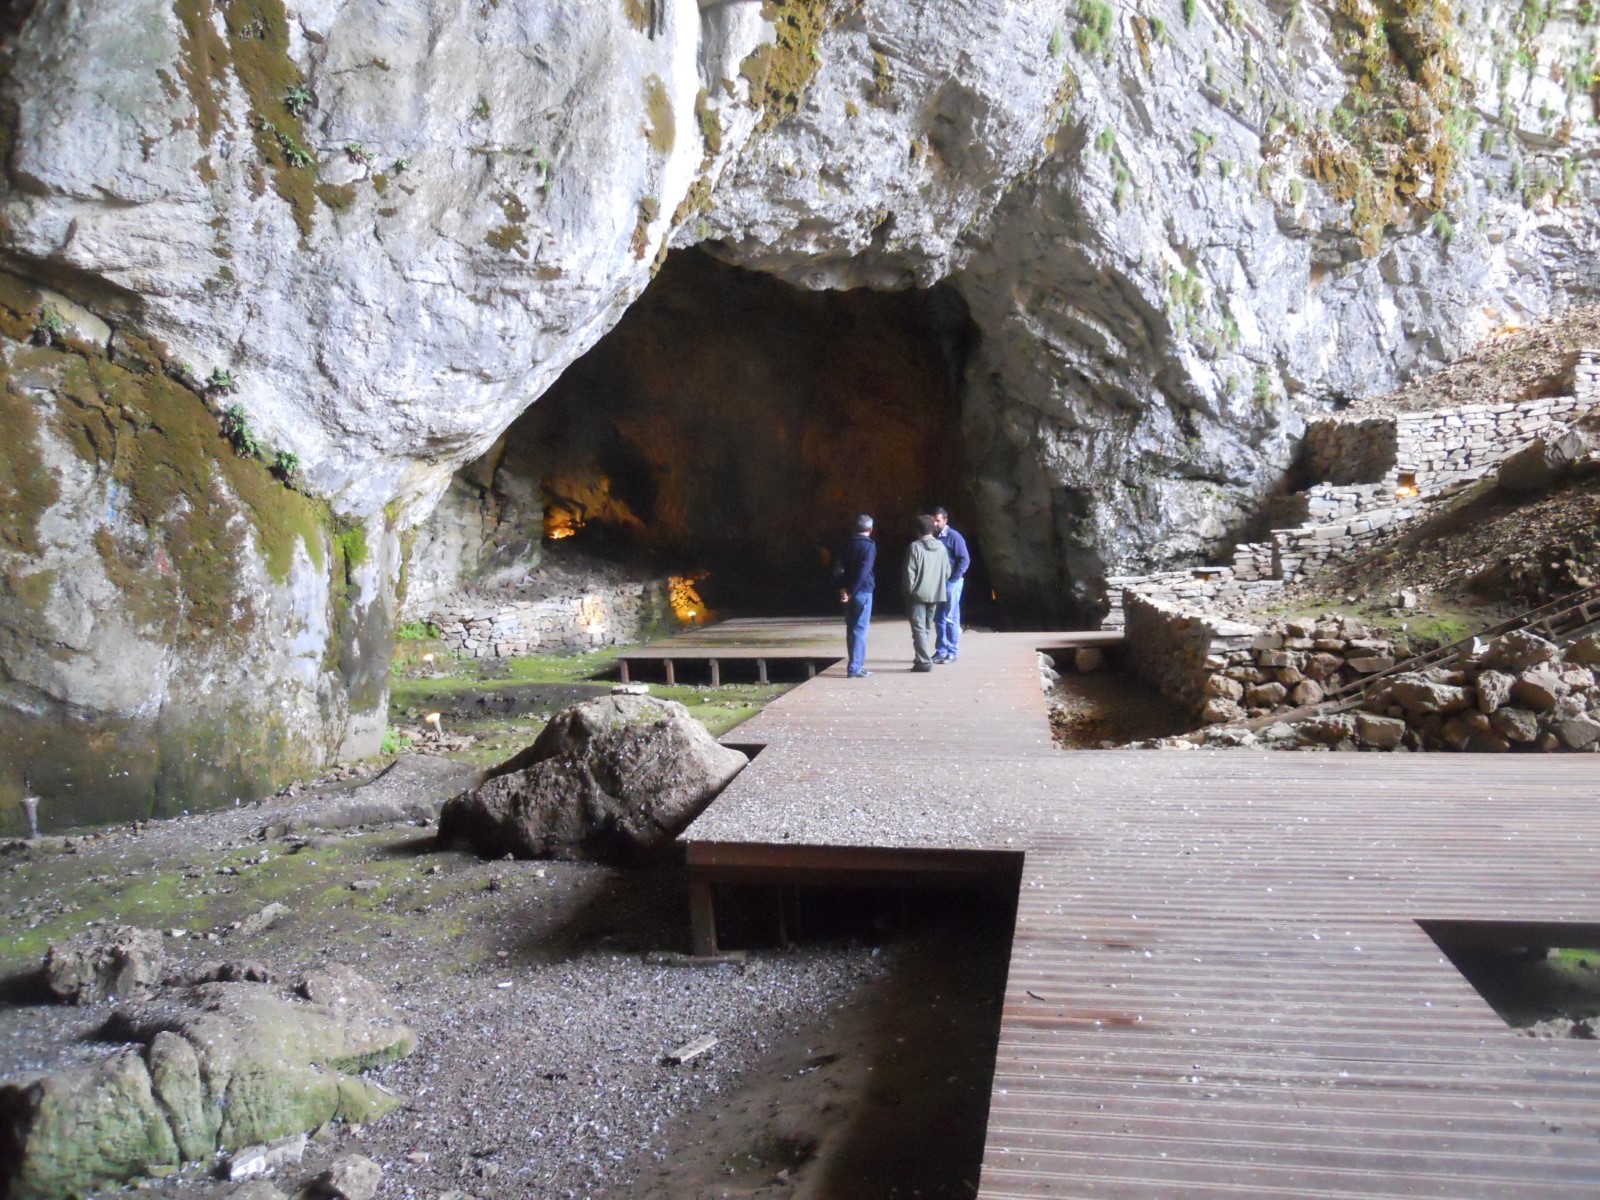 The Idaean Cave